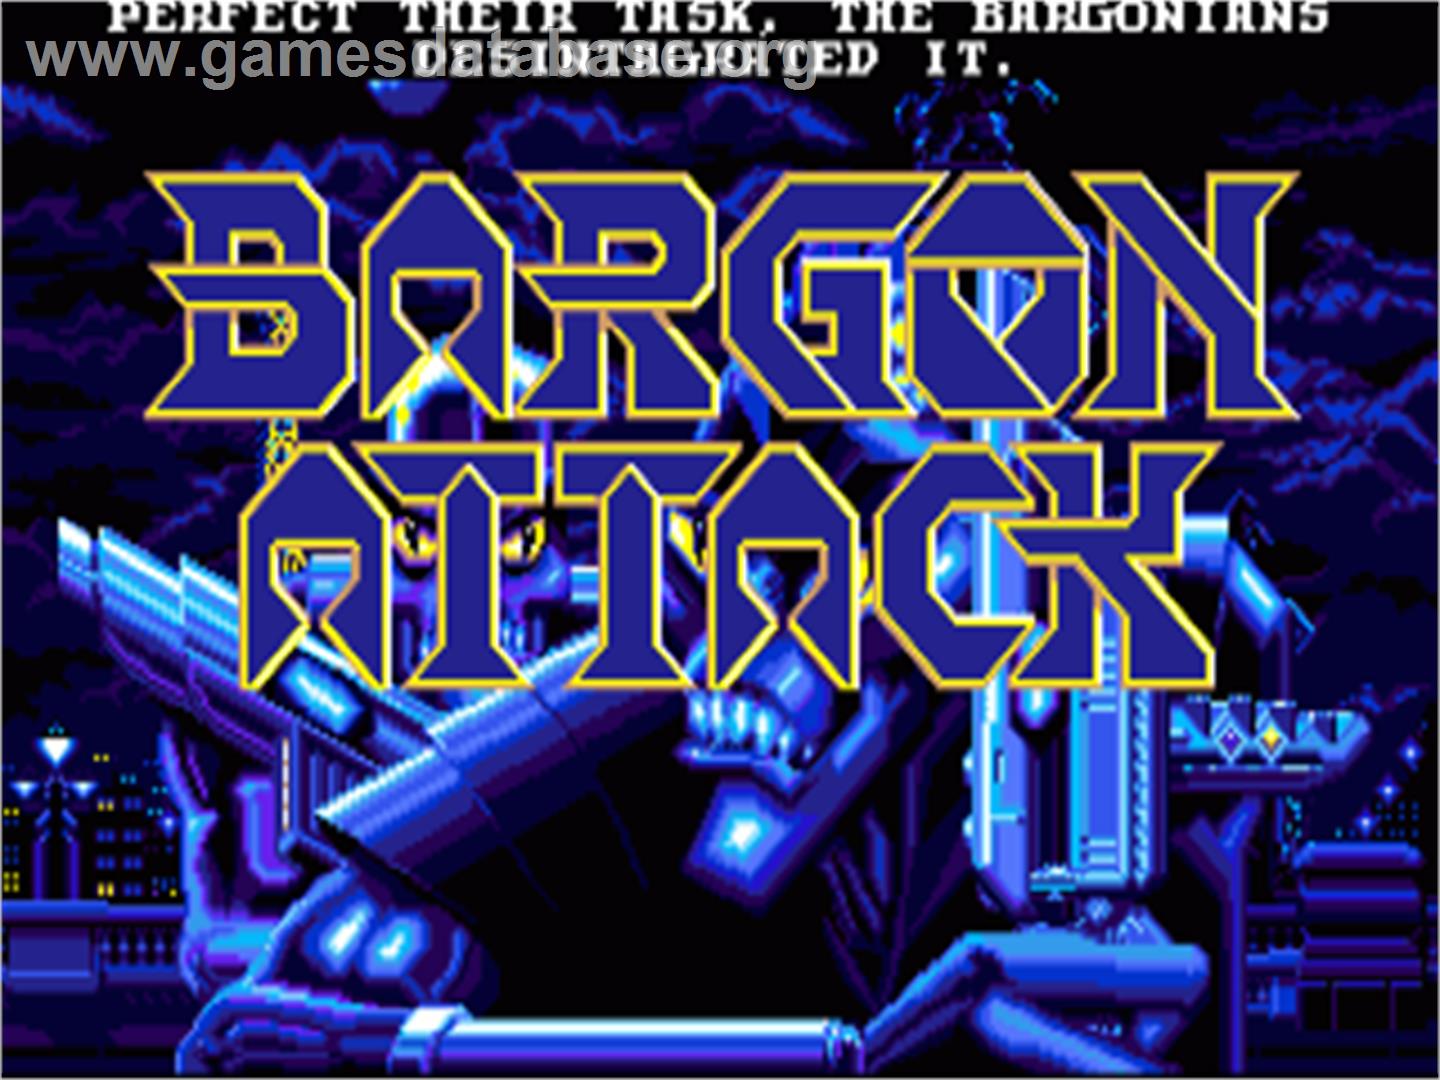 Bargon Attack - Commodore Amiga - Artwork - Title Screen